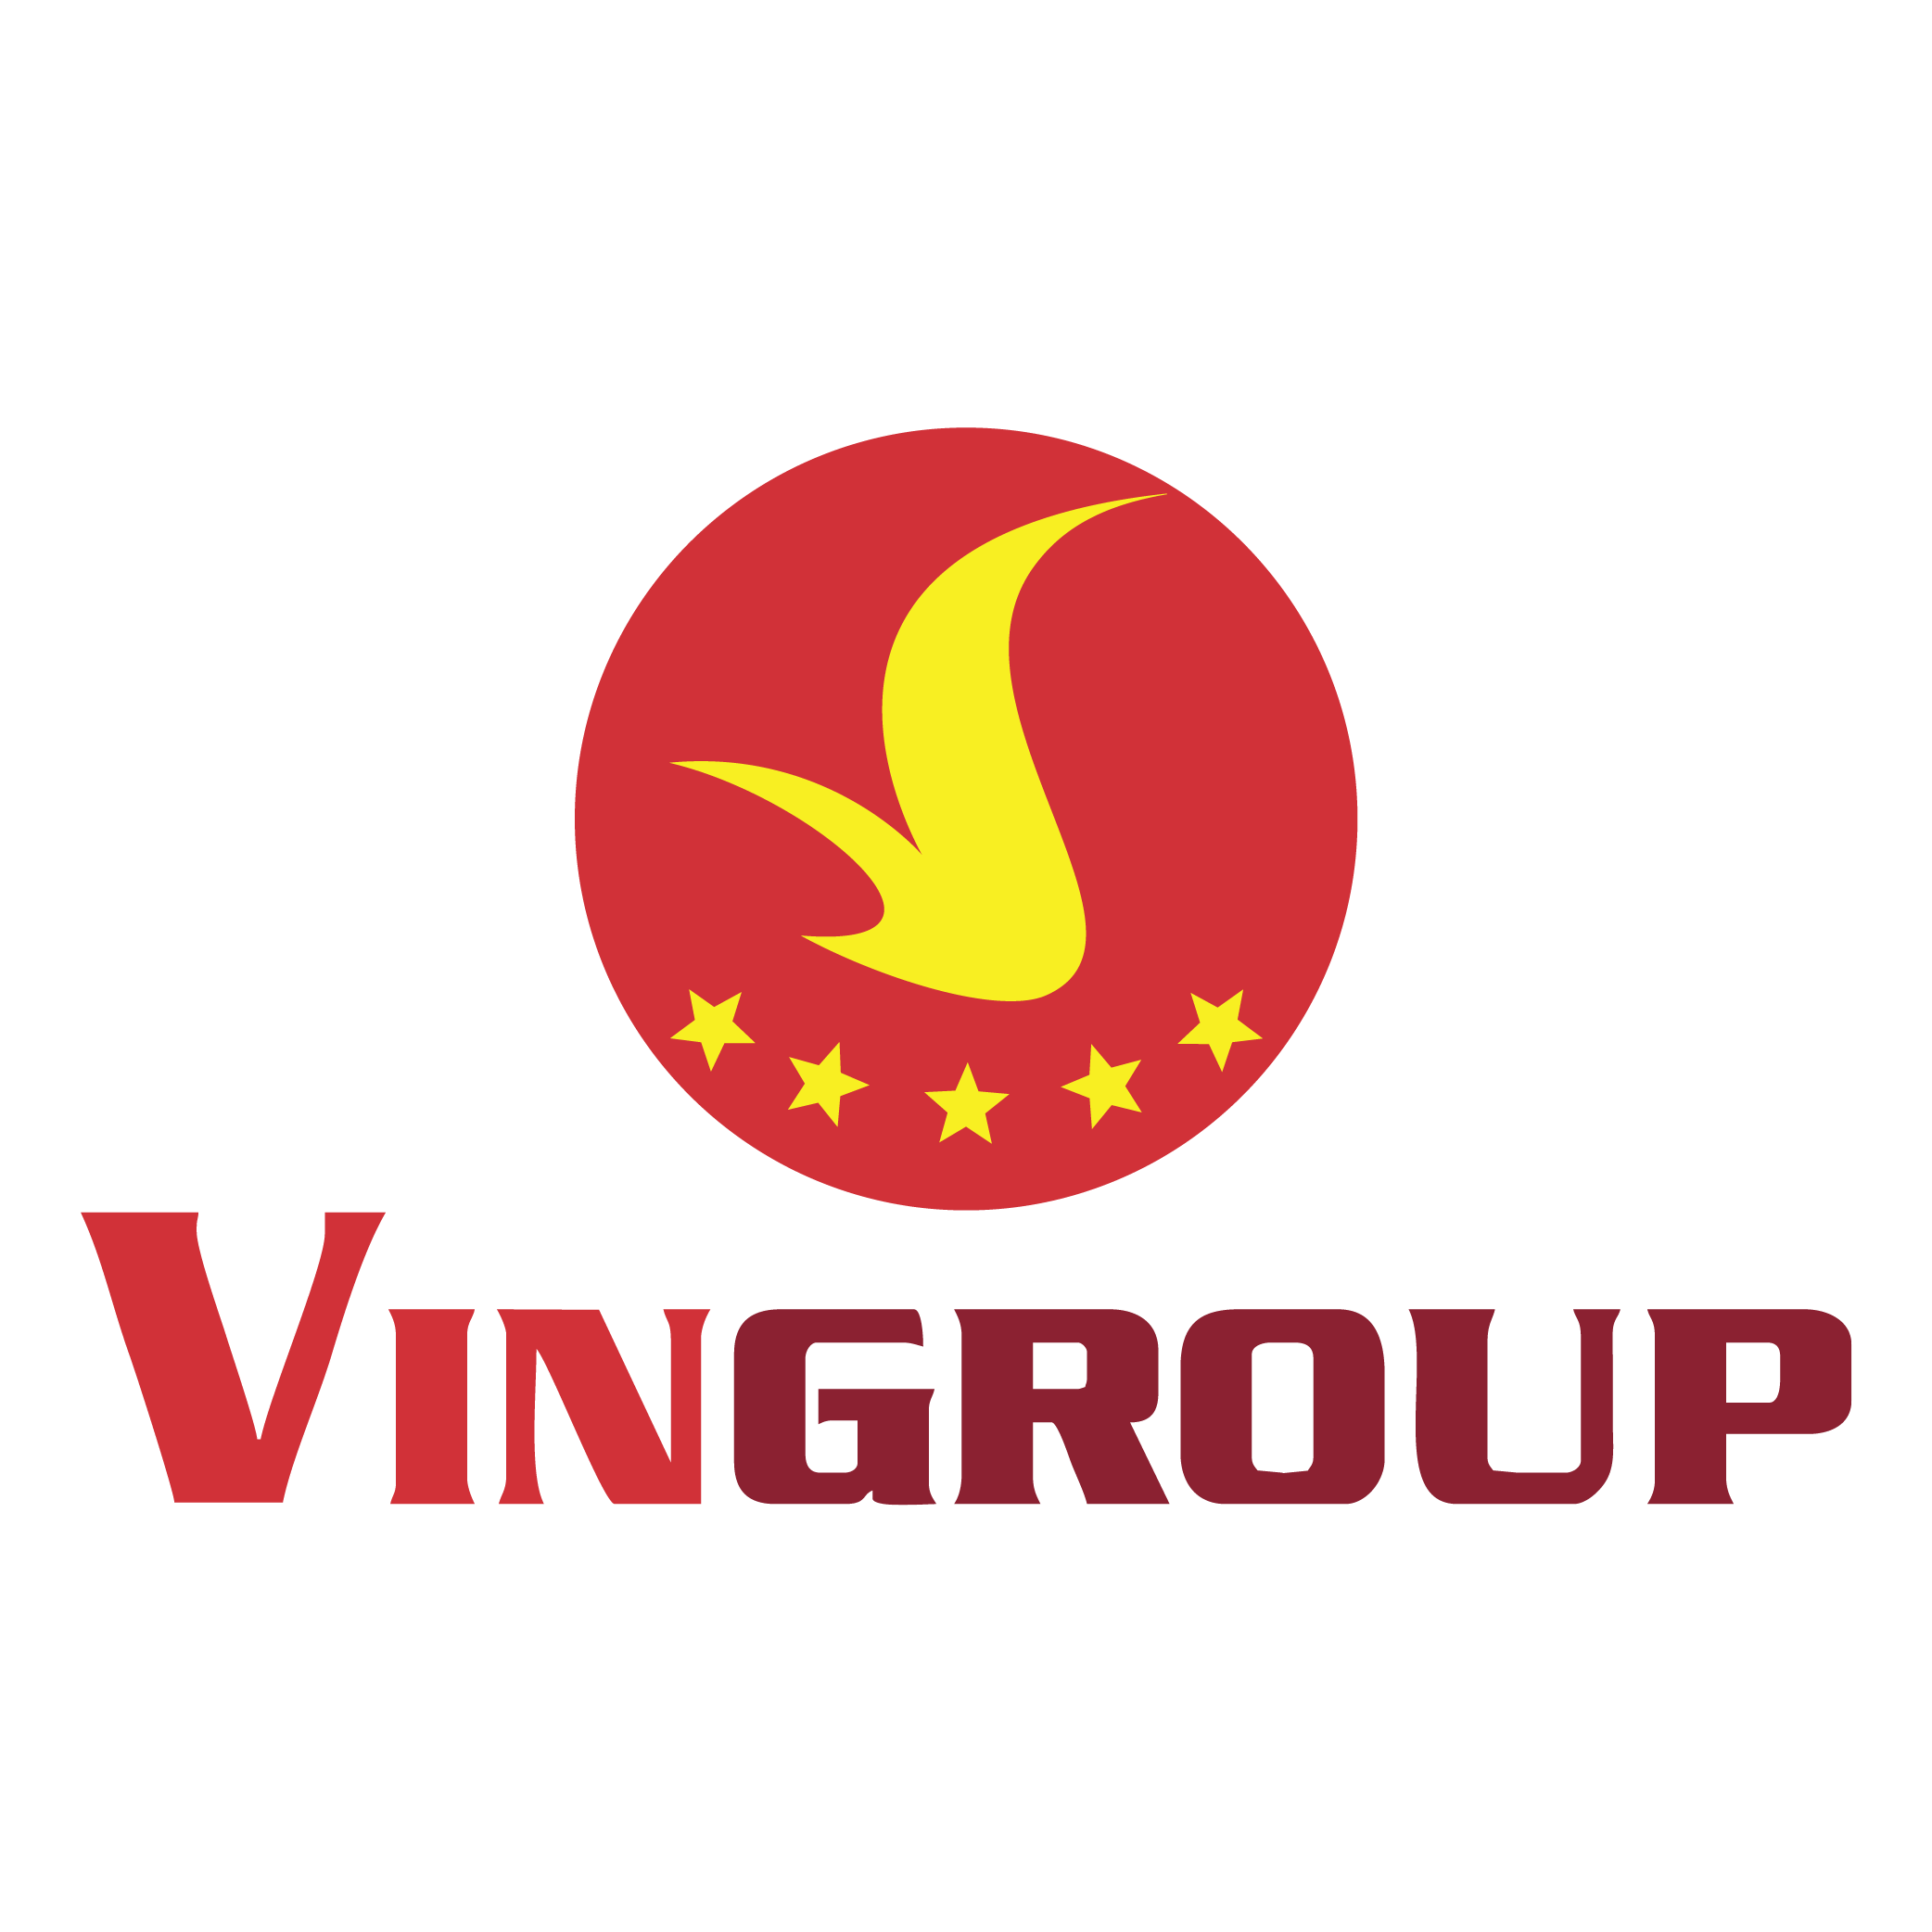 Vincom ứng dụng phần mềm quản lý BĐS hàng đầu thế giới Yardi ...